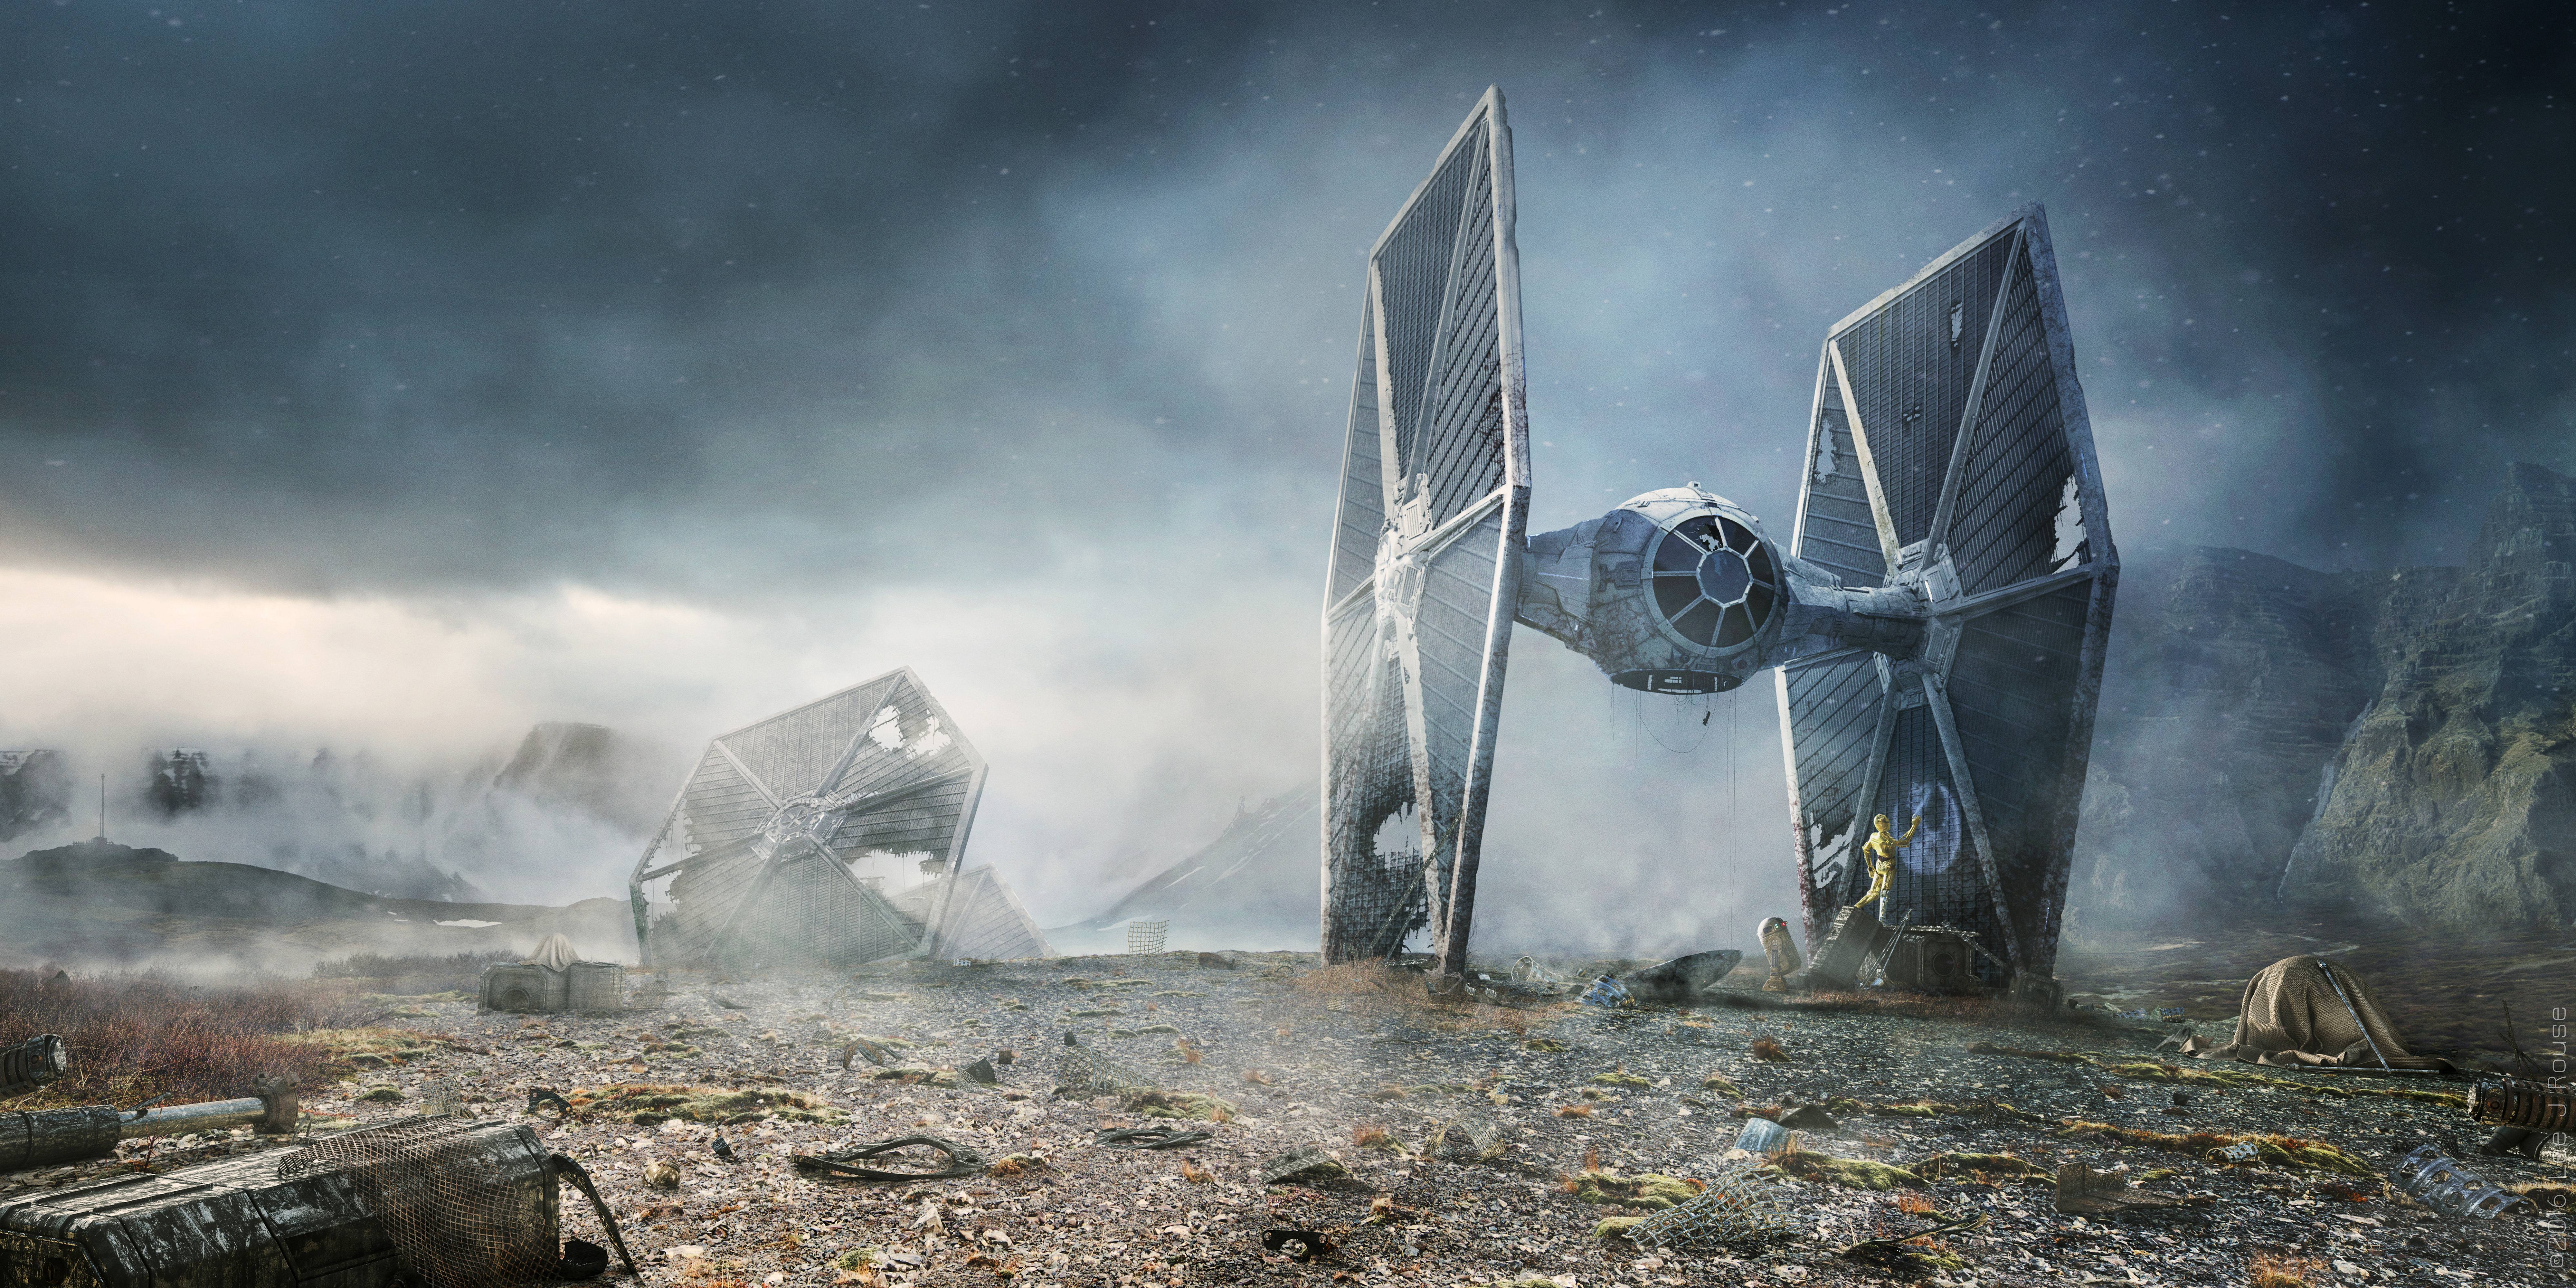 Sci Fi Star Wars 4k Ultra HD Wallpaper by Lee Rouse